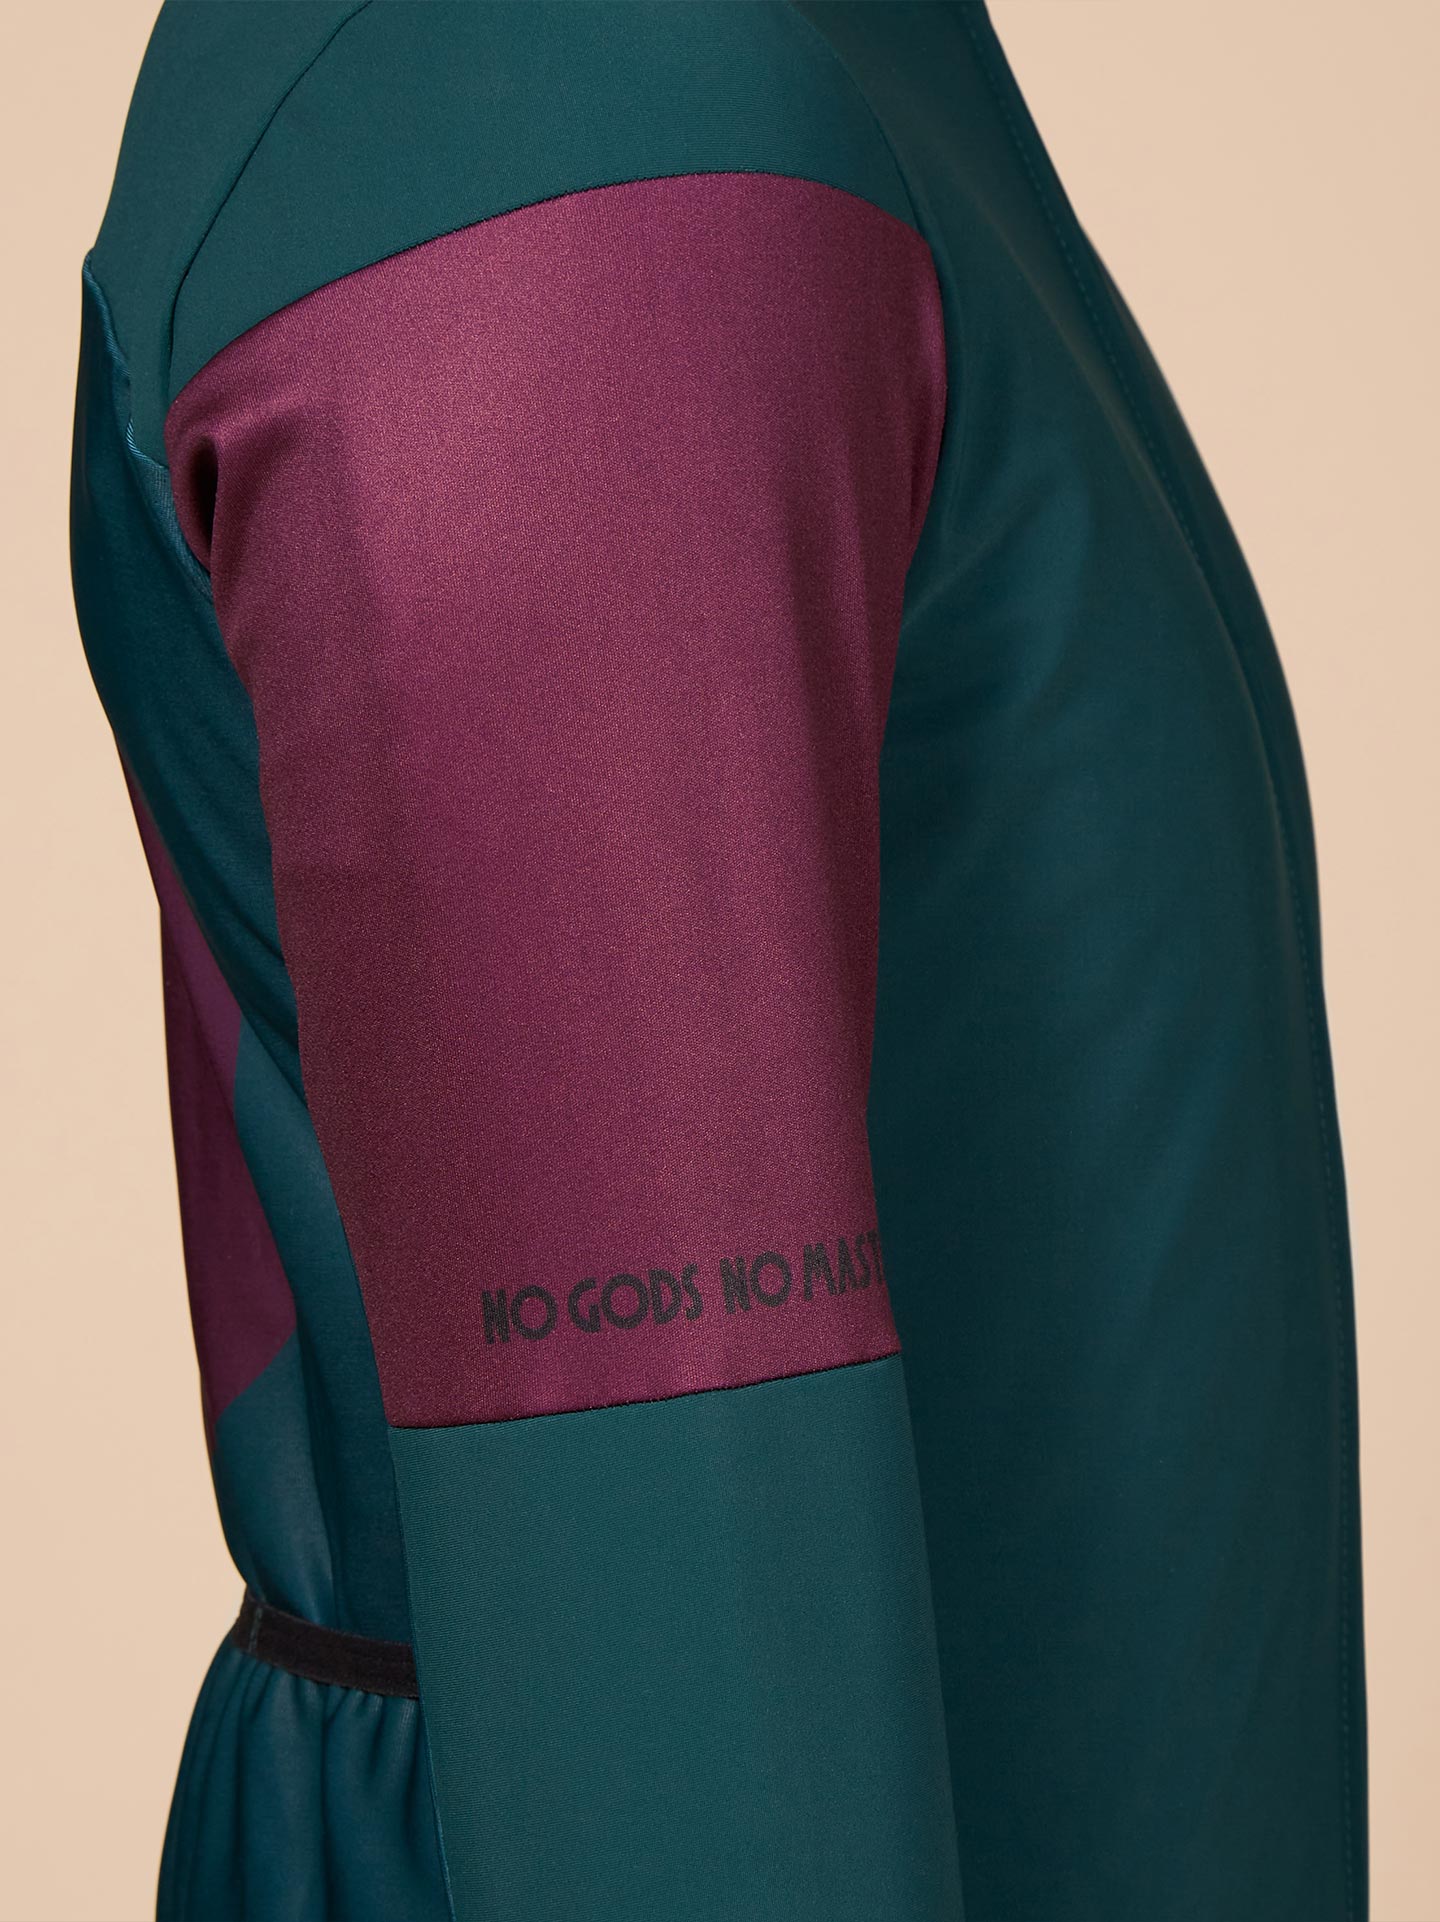 Mid-season jacket Healing circle green deep purple sleeve